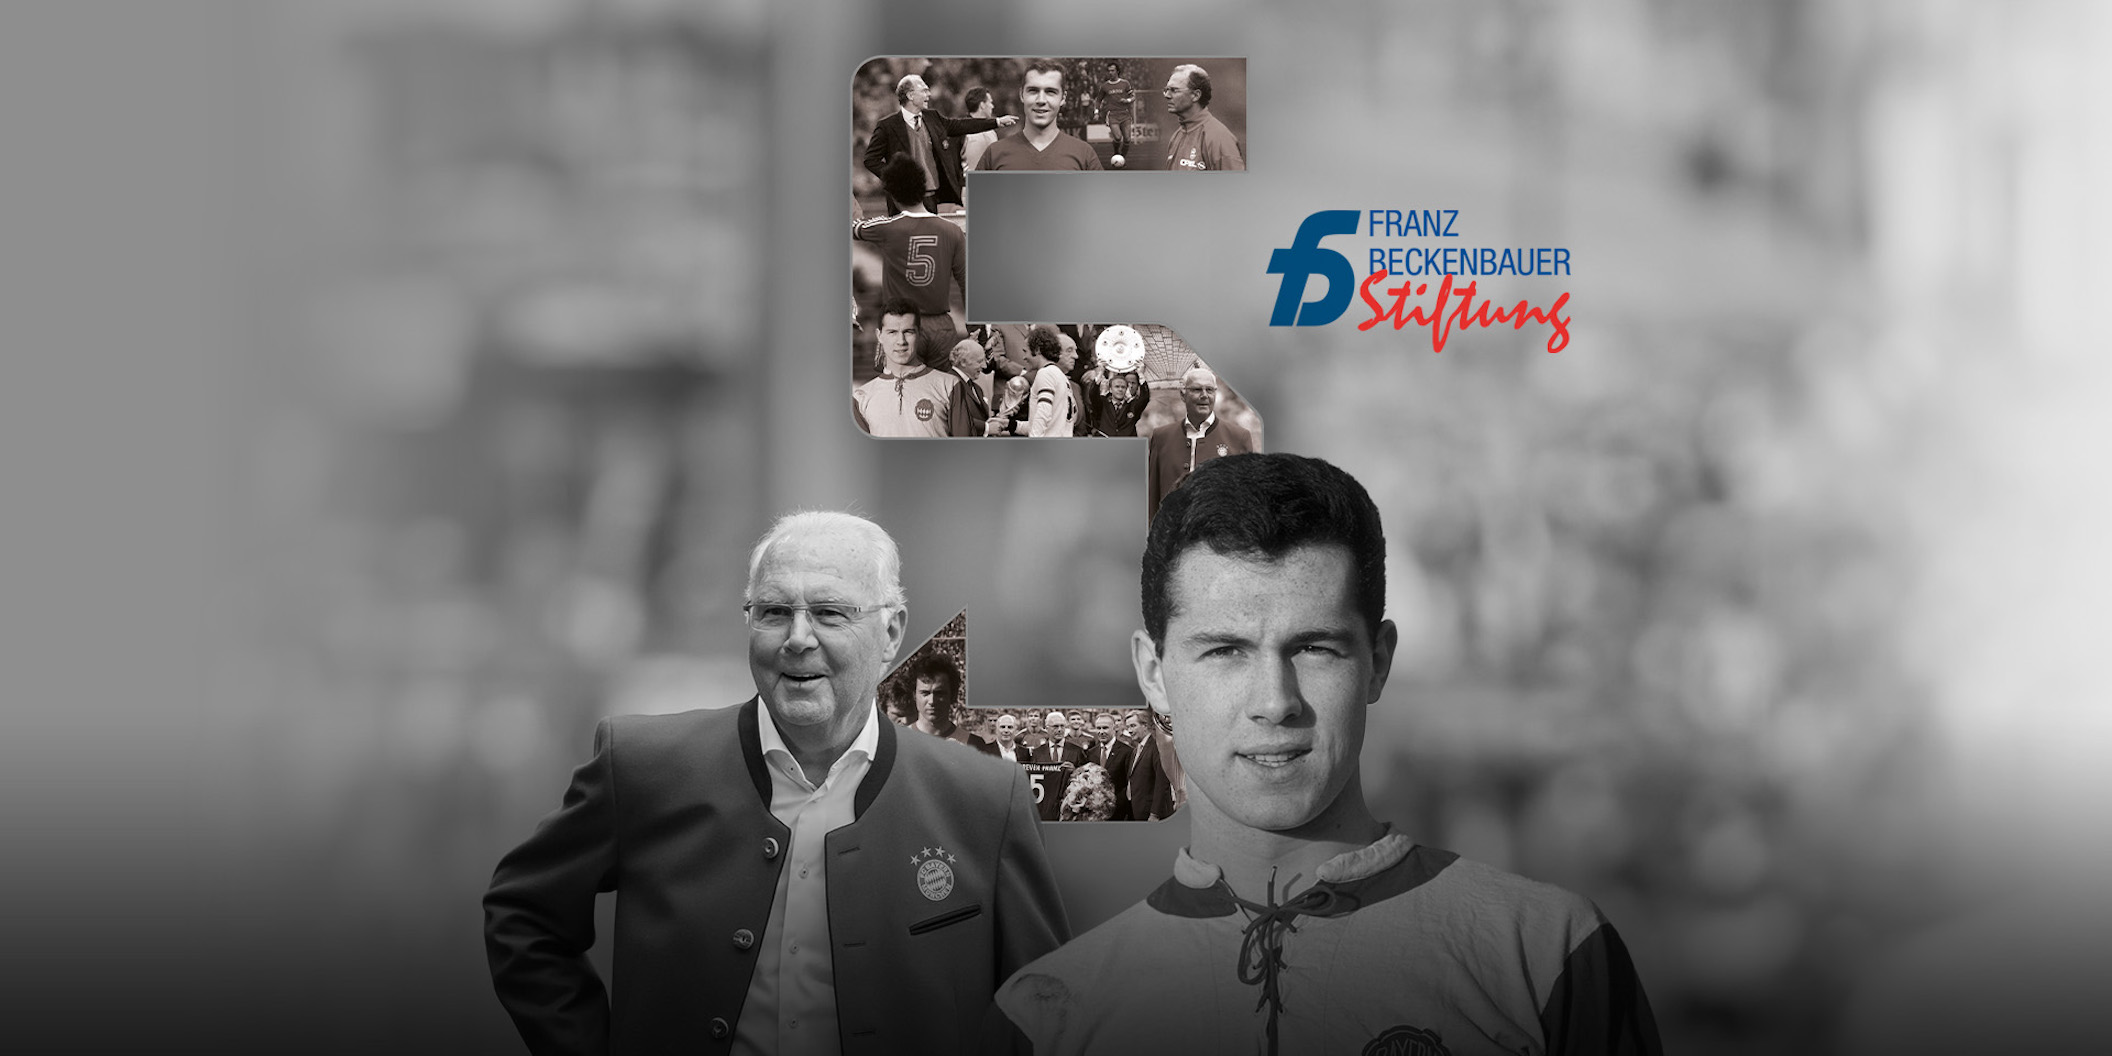 Zugunsten der Franz Beckenbauer-Stiftung: Sonderedition und Auktion des FC Bayern